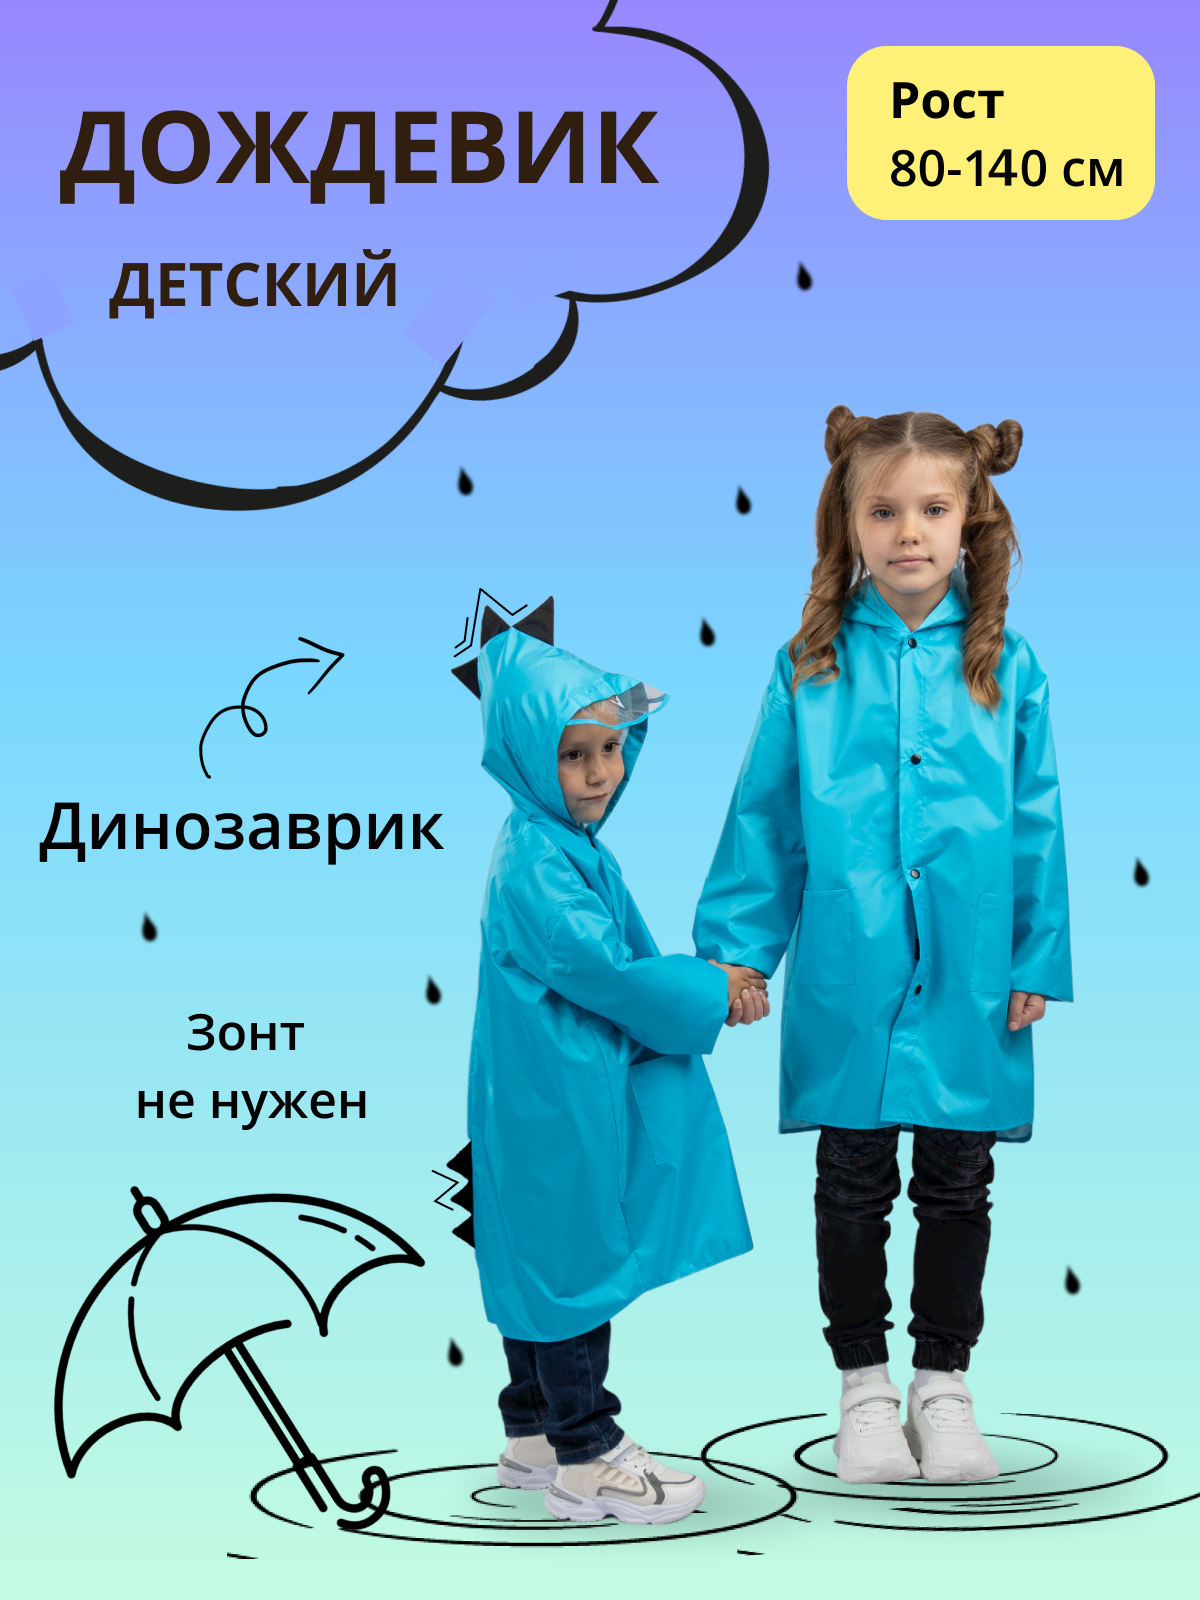 Дождевик детский Под дождем 122905588, голубой, 110